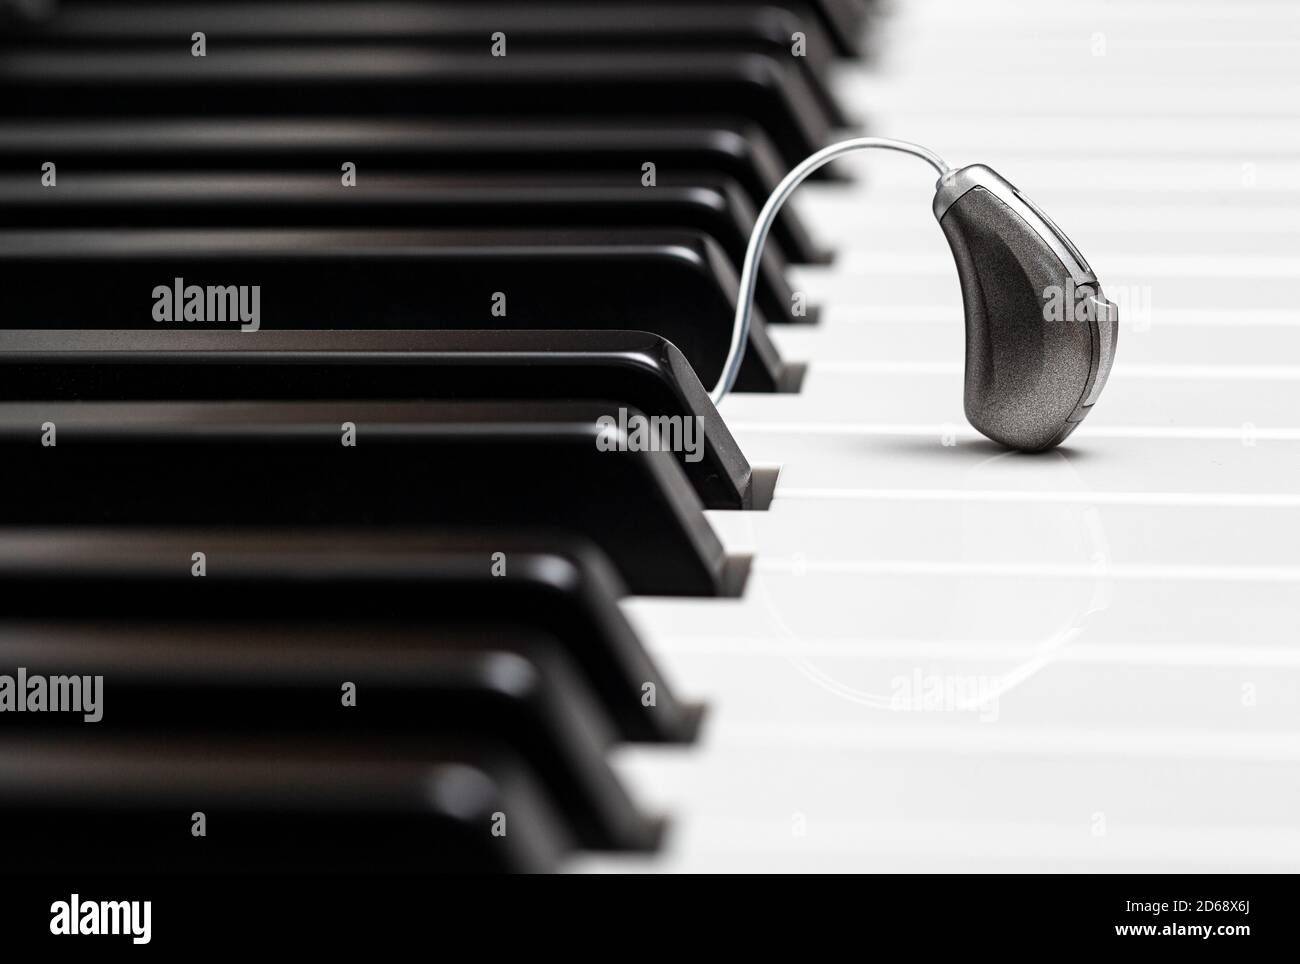 Aide auditive en gros plan sur les touches du piano. Traitement de la surdité. Solution auditive, écoutez toute la variété de sons dans le monde Banque D'Images